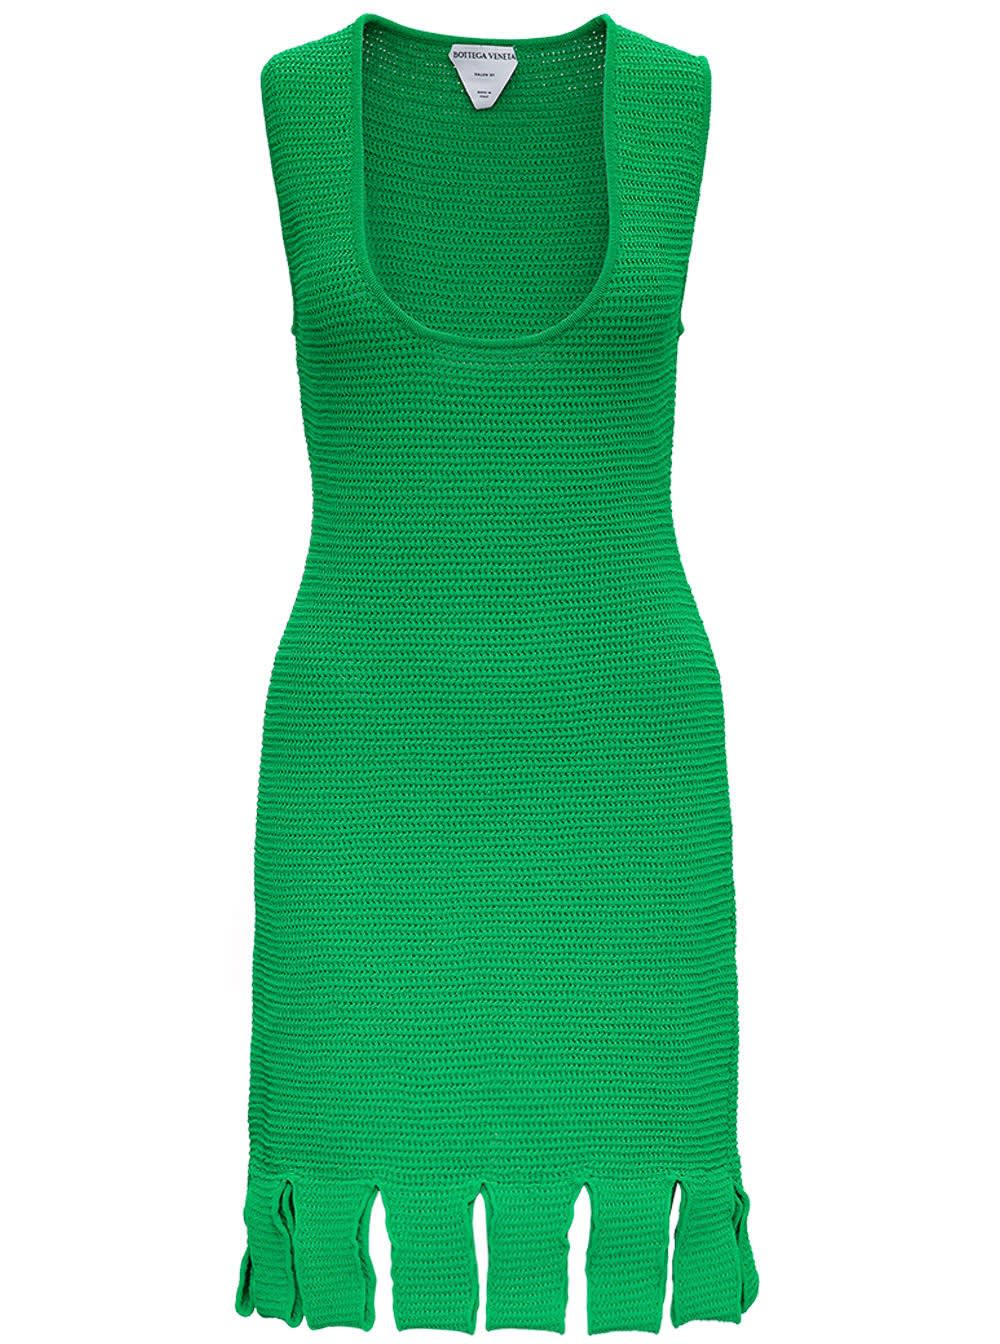 Bottega Veneta Green Knitted Dress With Fringes